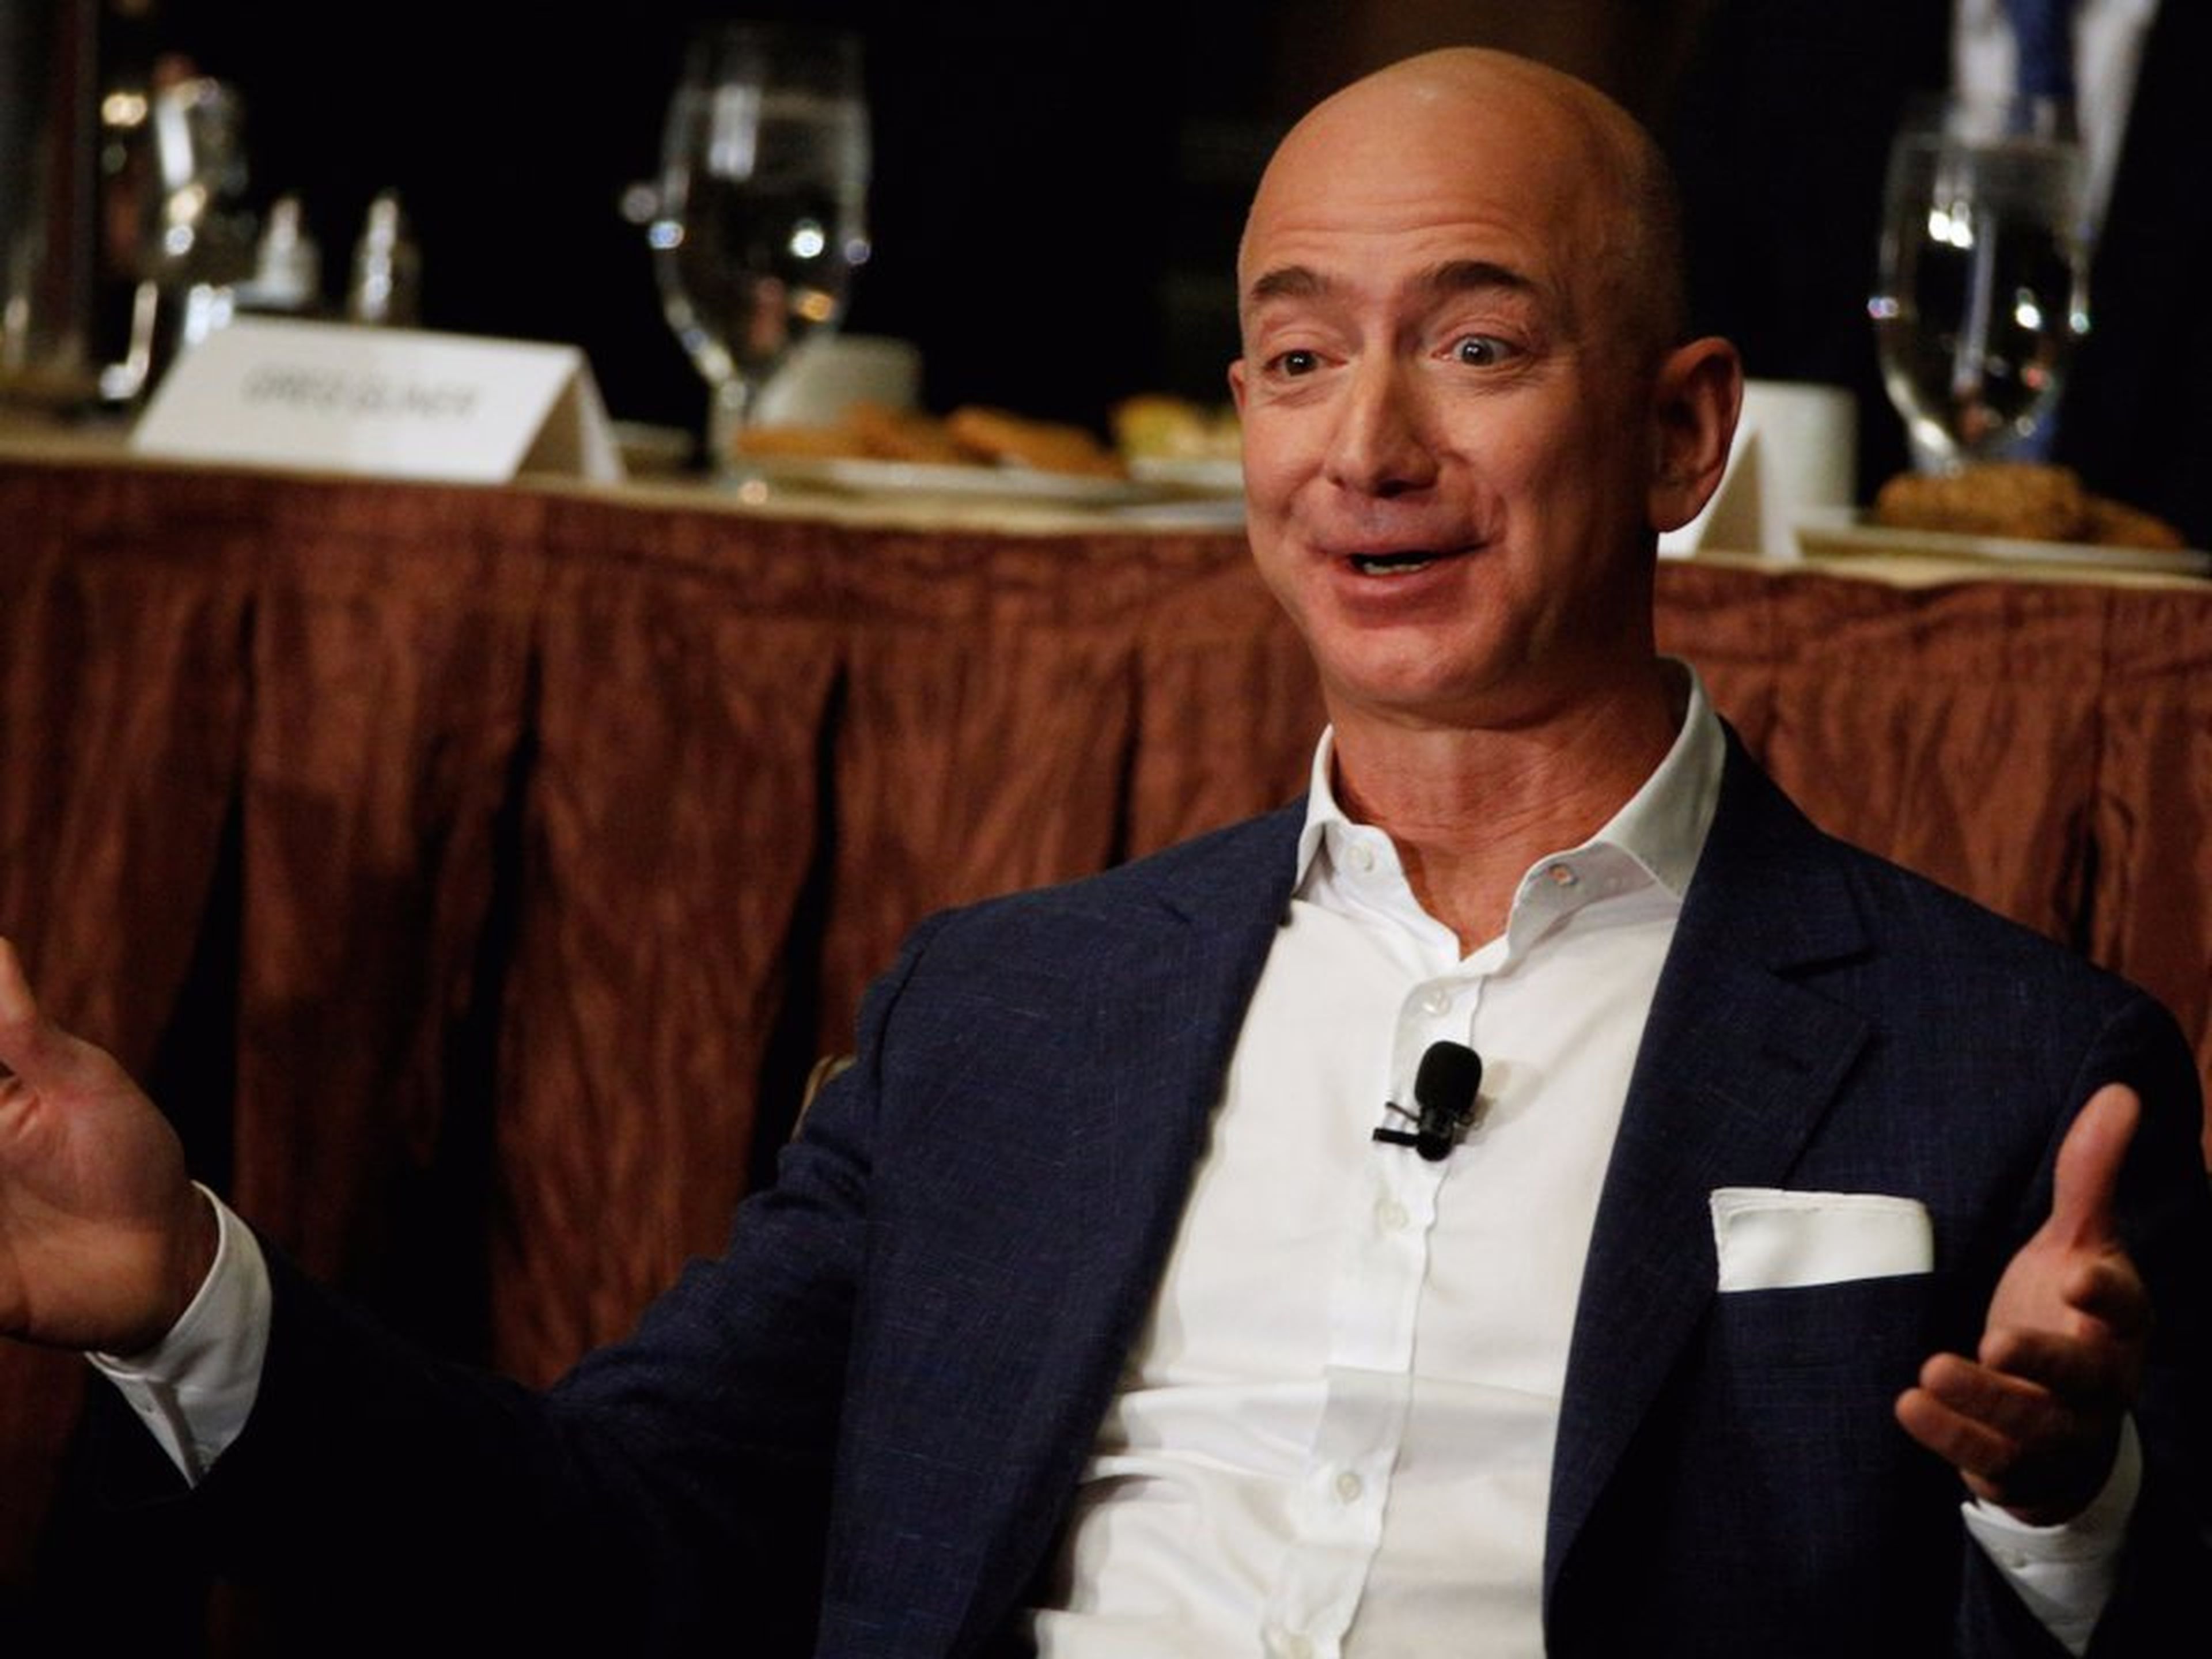 Jeff Bezos le dijo a un empleado en una ocasión: "si vuelvo a oír esa idea, me suicidaré".